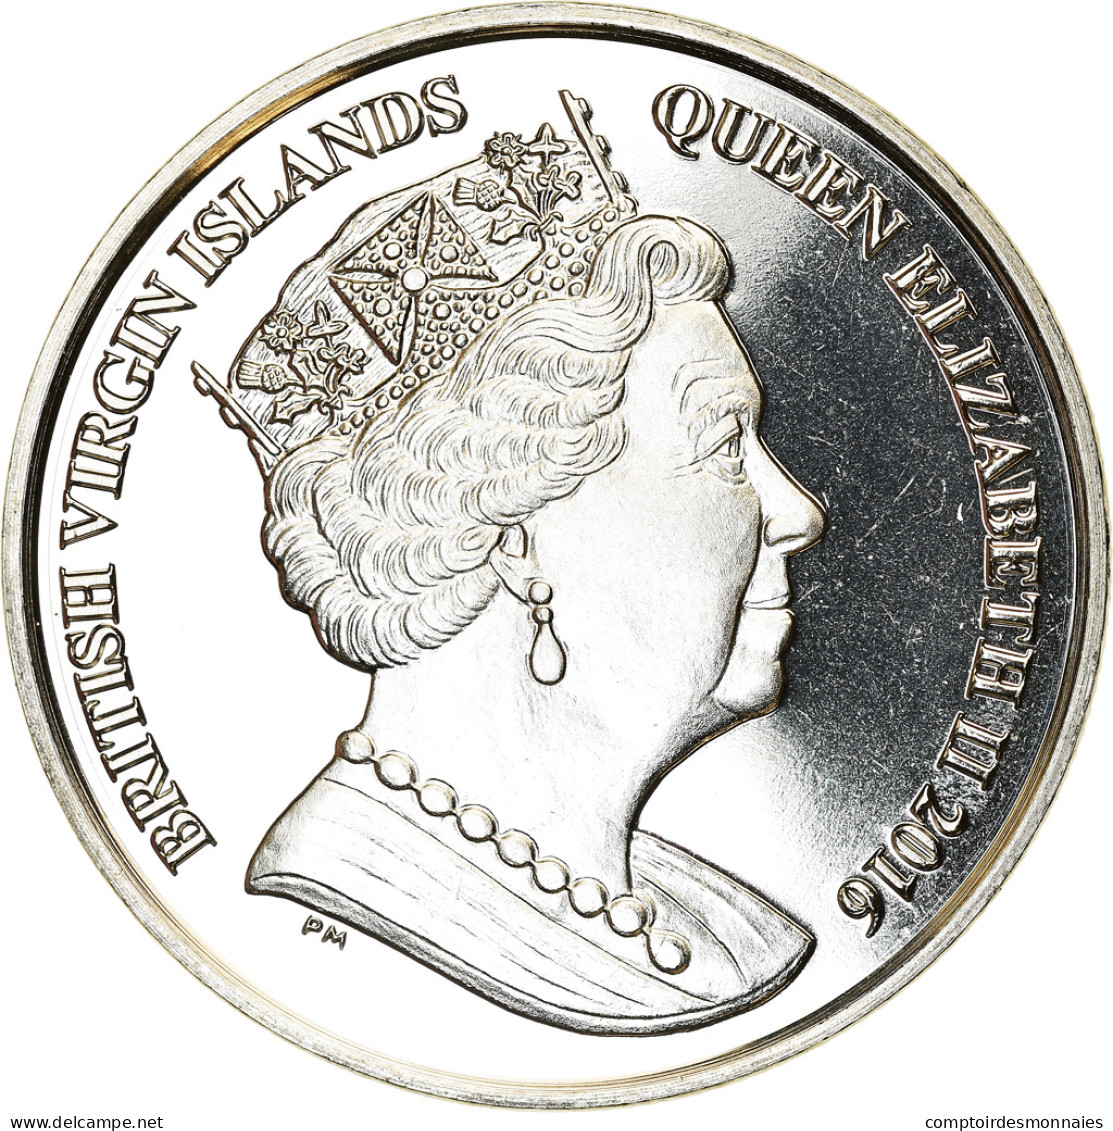 Monnaie, BRITISH VIRGIN ISLANDS, Dollar, 2016, Franklin Mint, Discipline - Iles Vièrges Britanniques